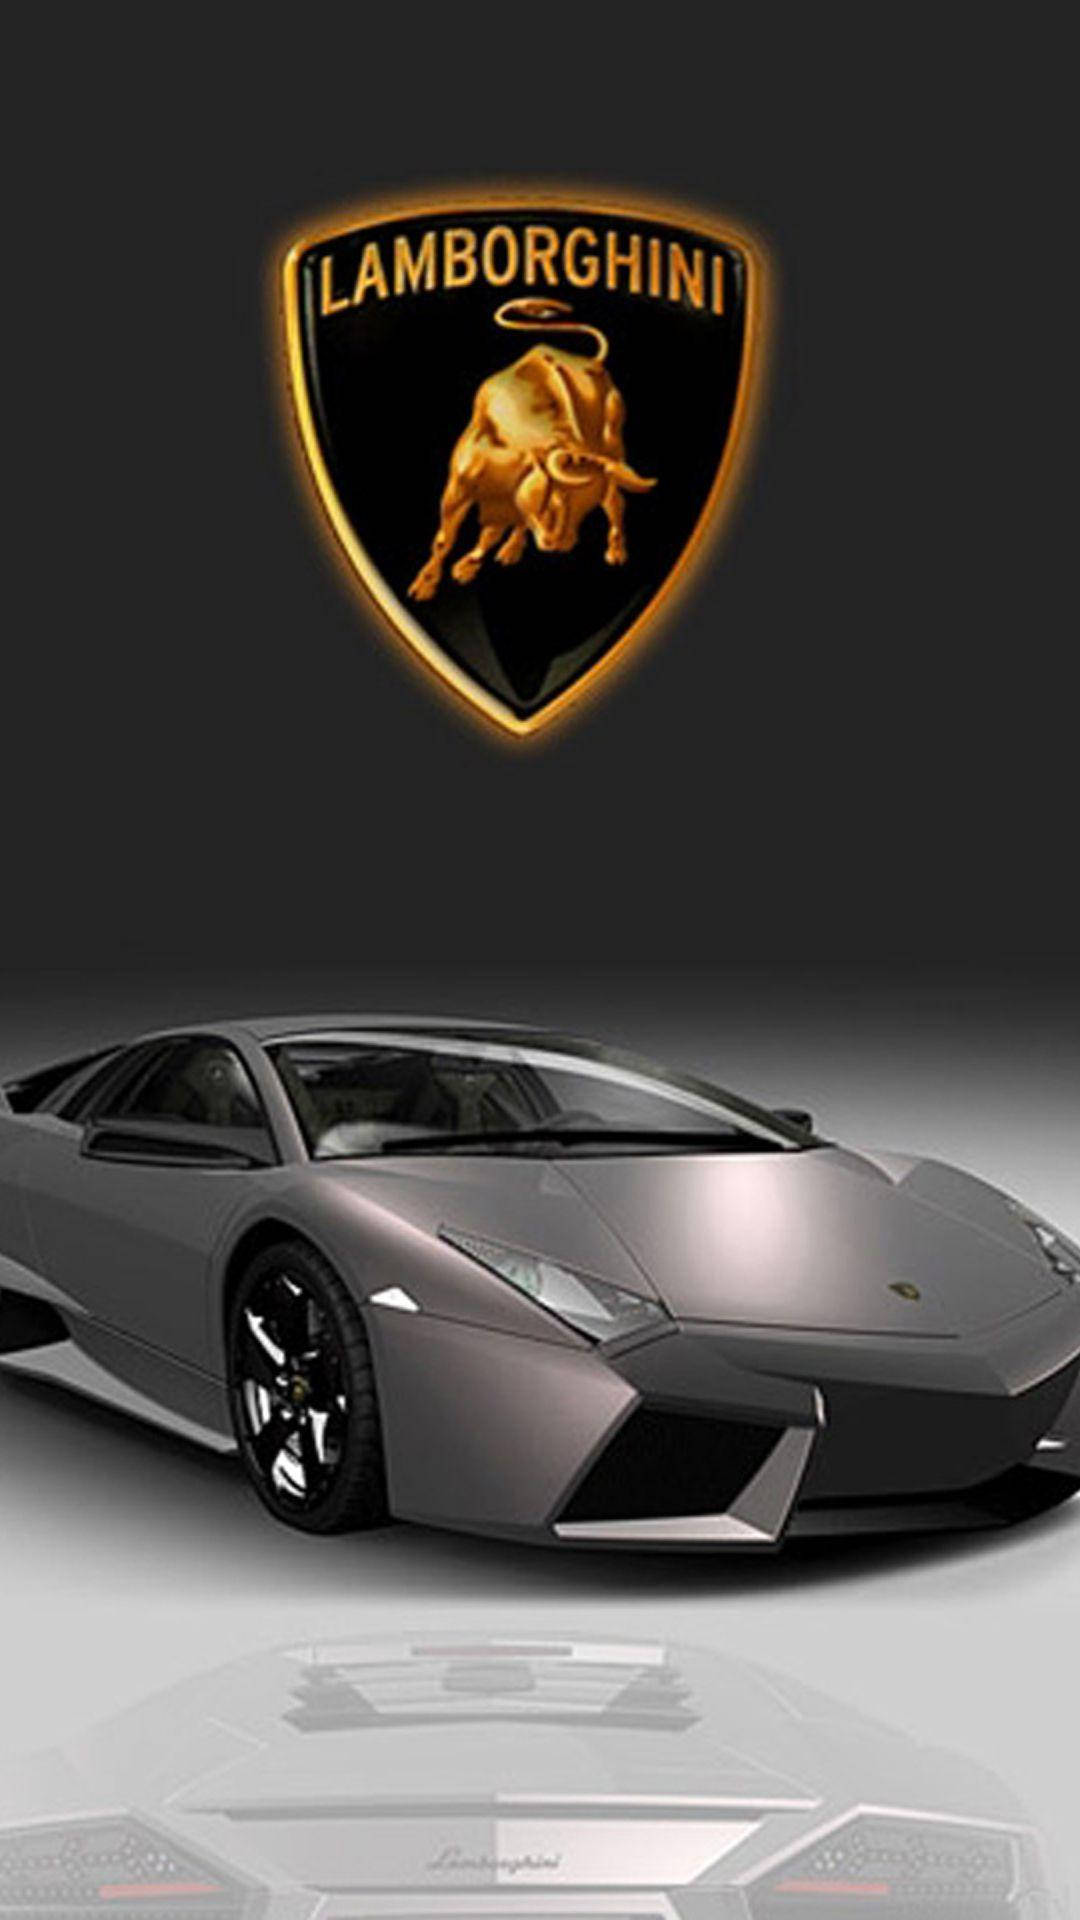 Download Emblem For Iphone Lamborghini Display Wallpaper 